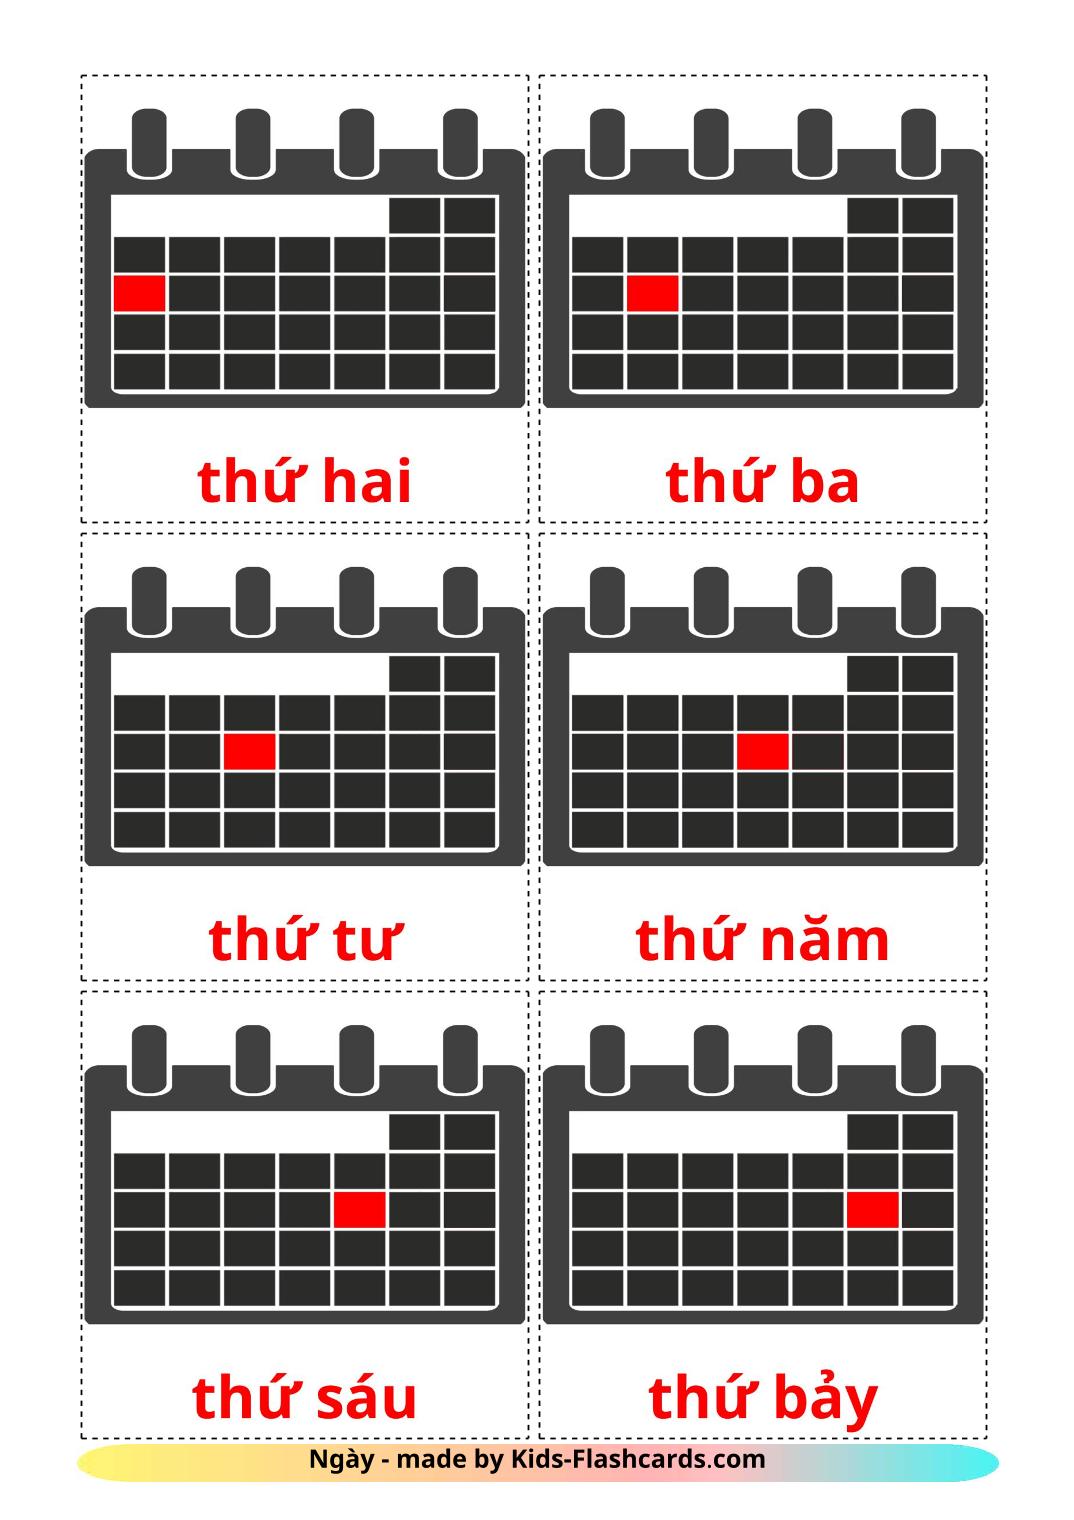 Dias da Semana - 12 Flashcards vietnamitaes gratuitos para impressão